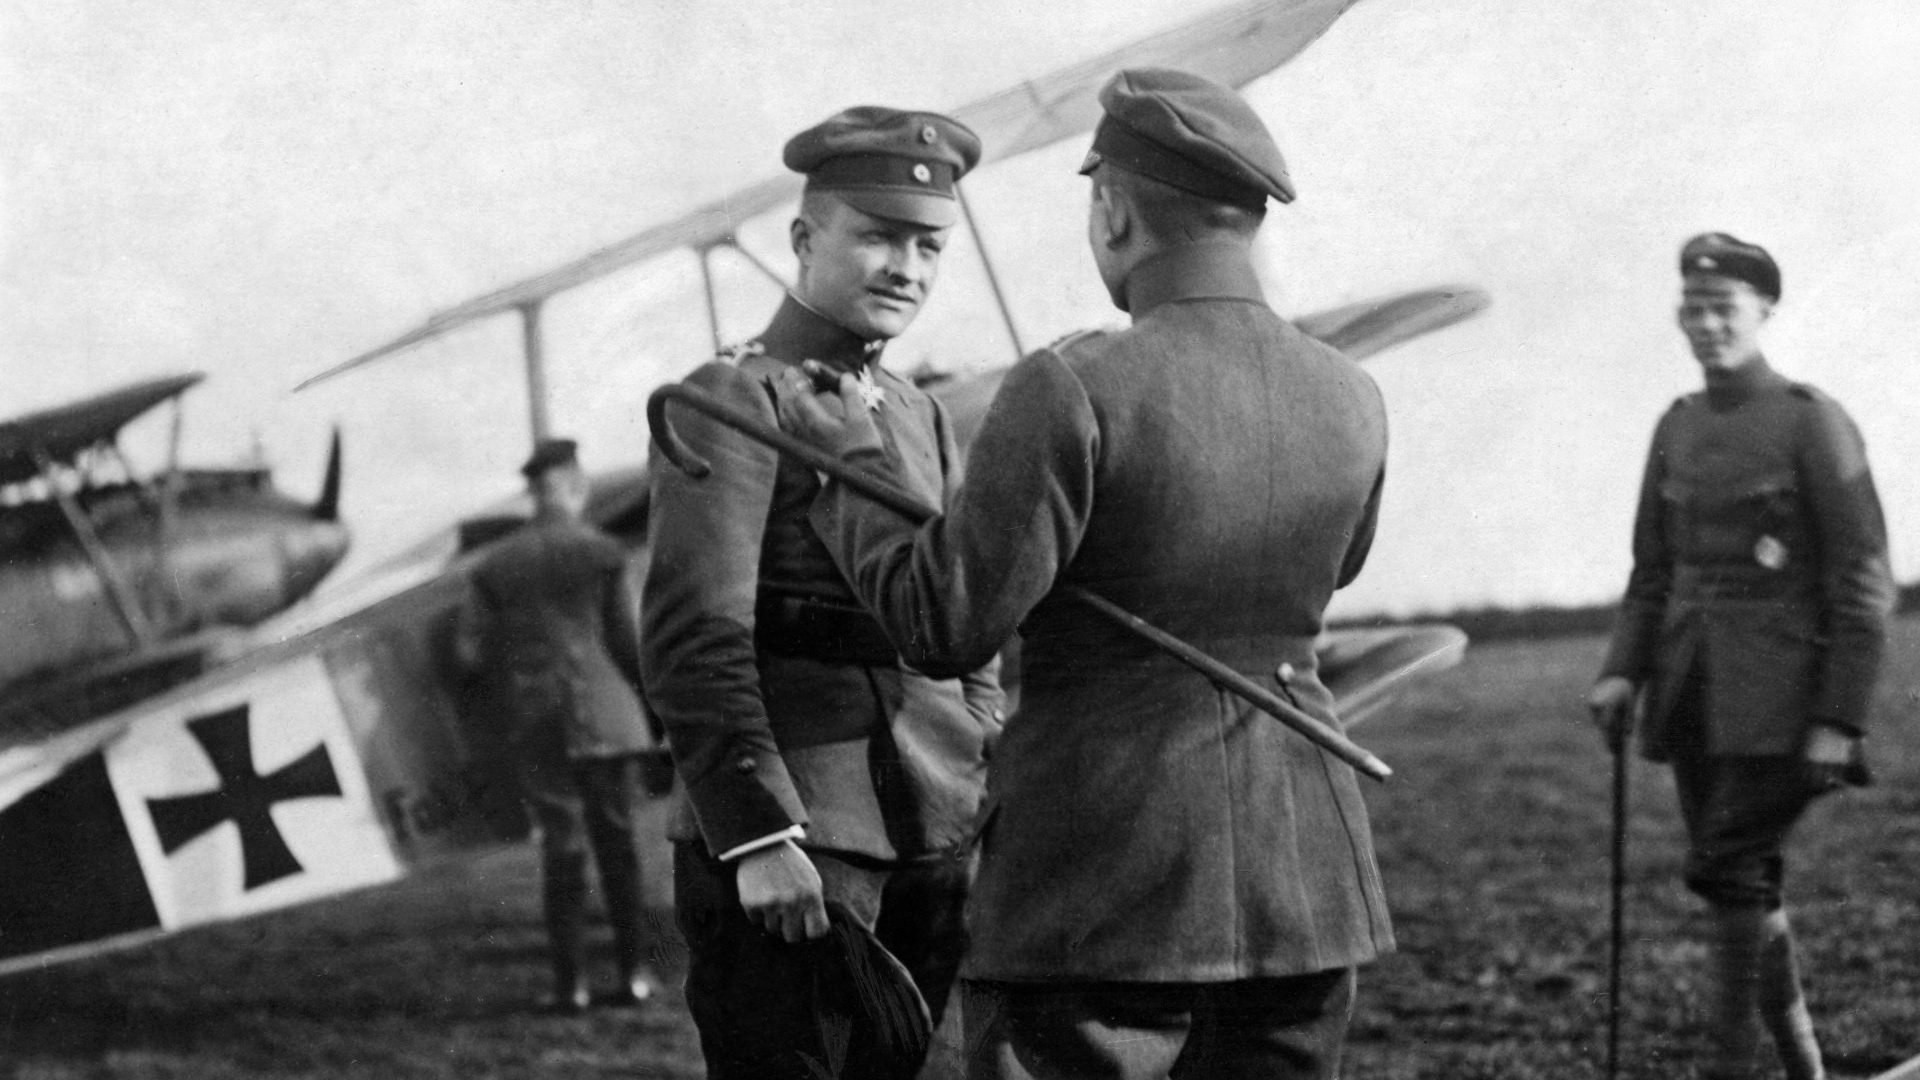 German first world war fighter ace Manfred von Richthofen, the “Red 
Baron”, in front of 
his Fokker Triplane 
aircraft, 1918. Photo: ullstein bild/Getty